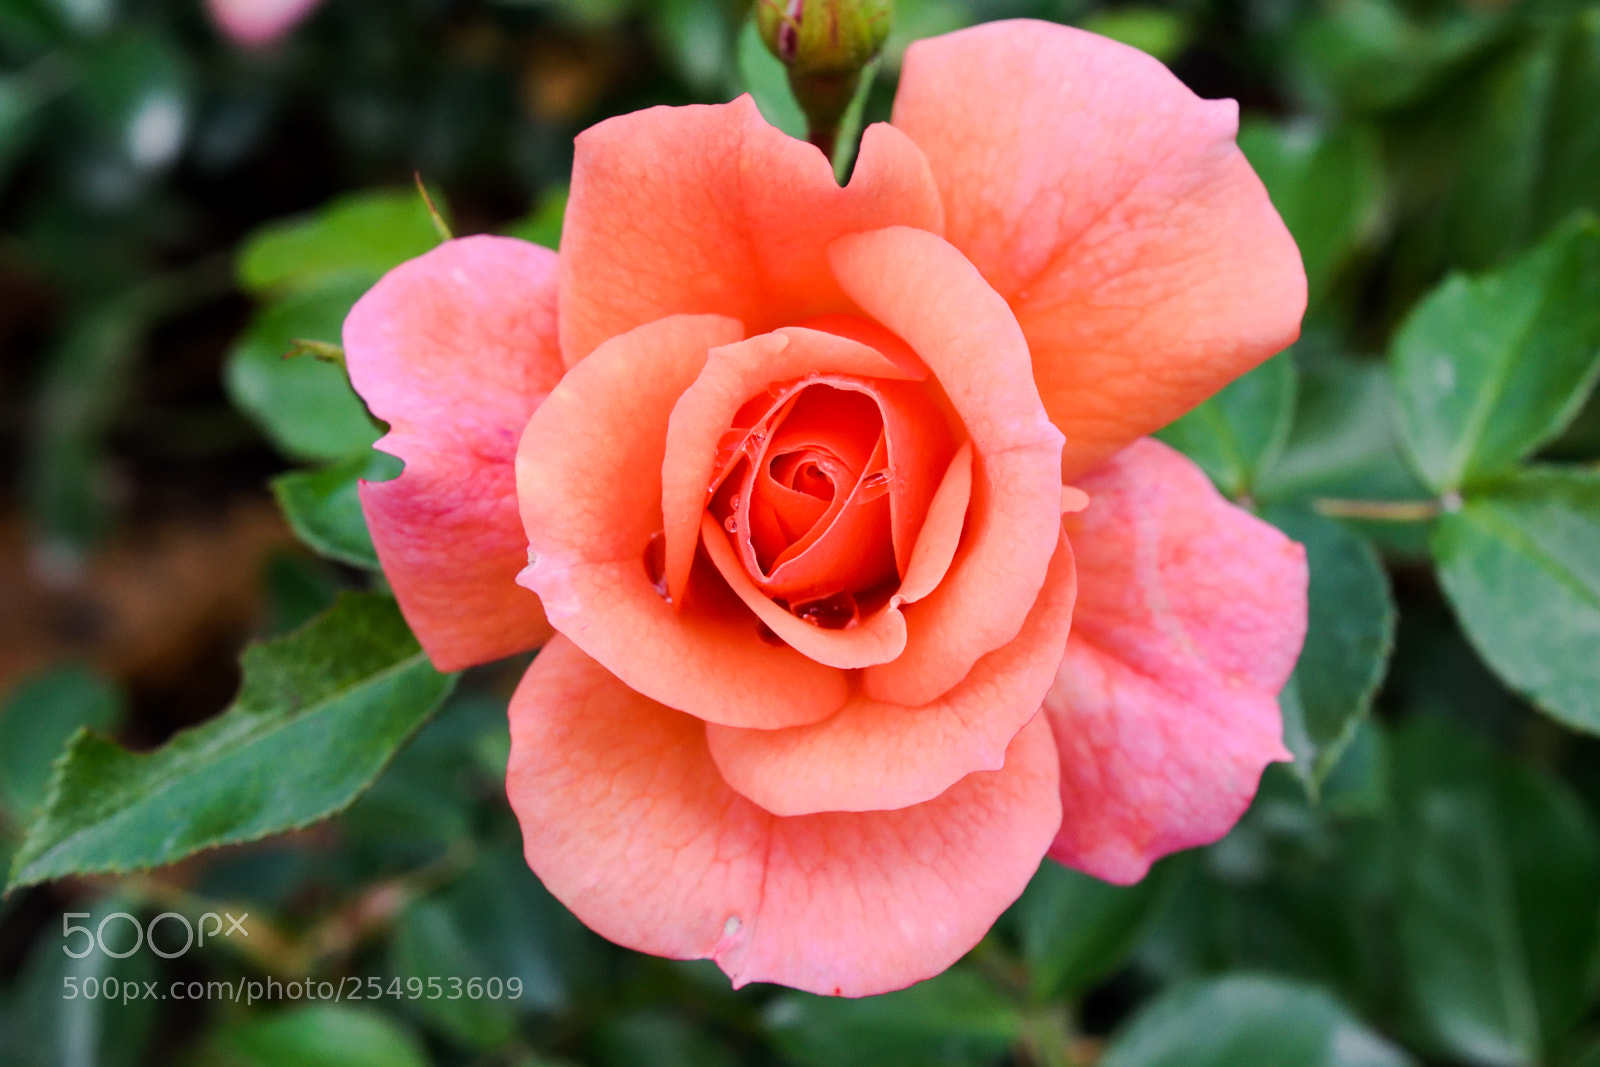 Nikon D3300 sample photo. Orange/pink rose photography